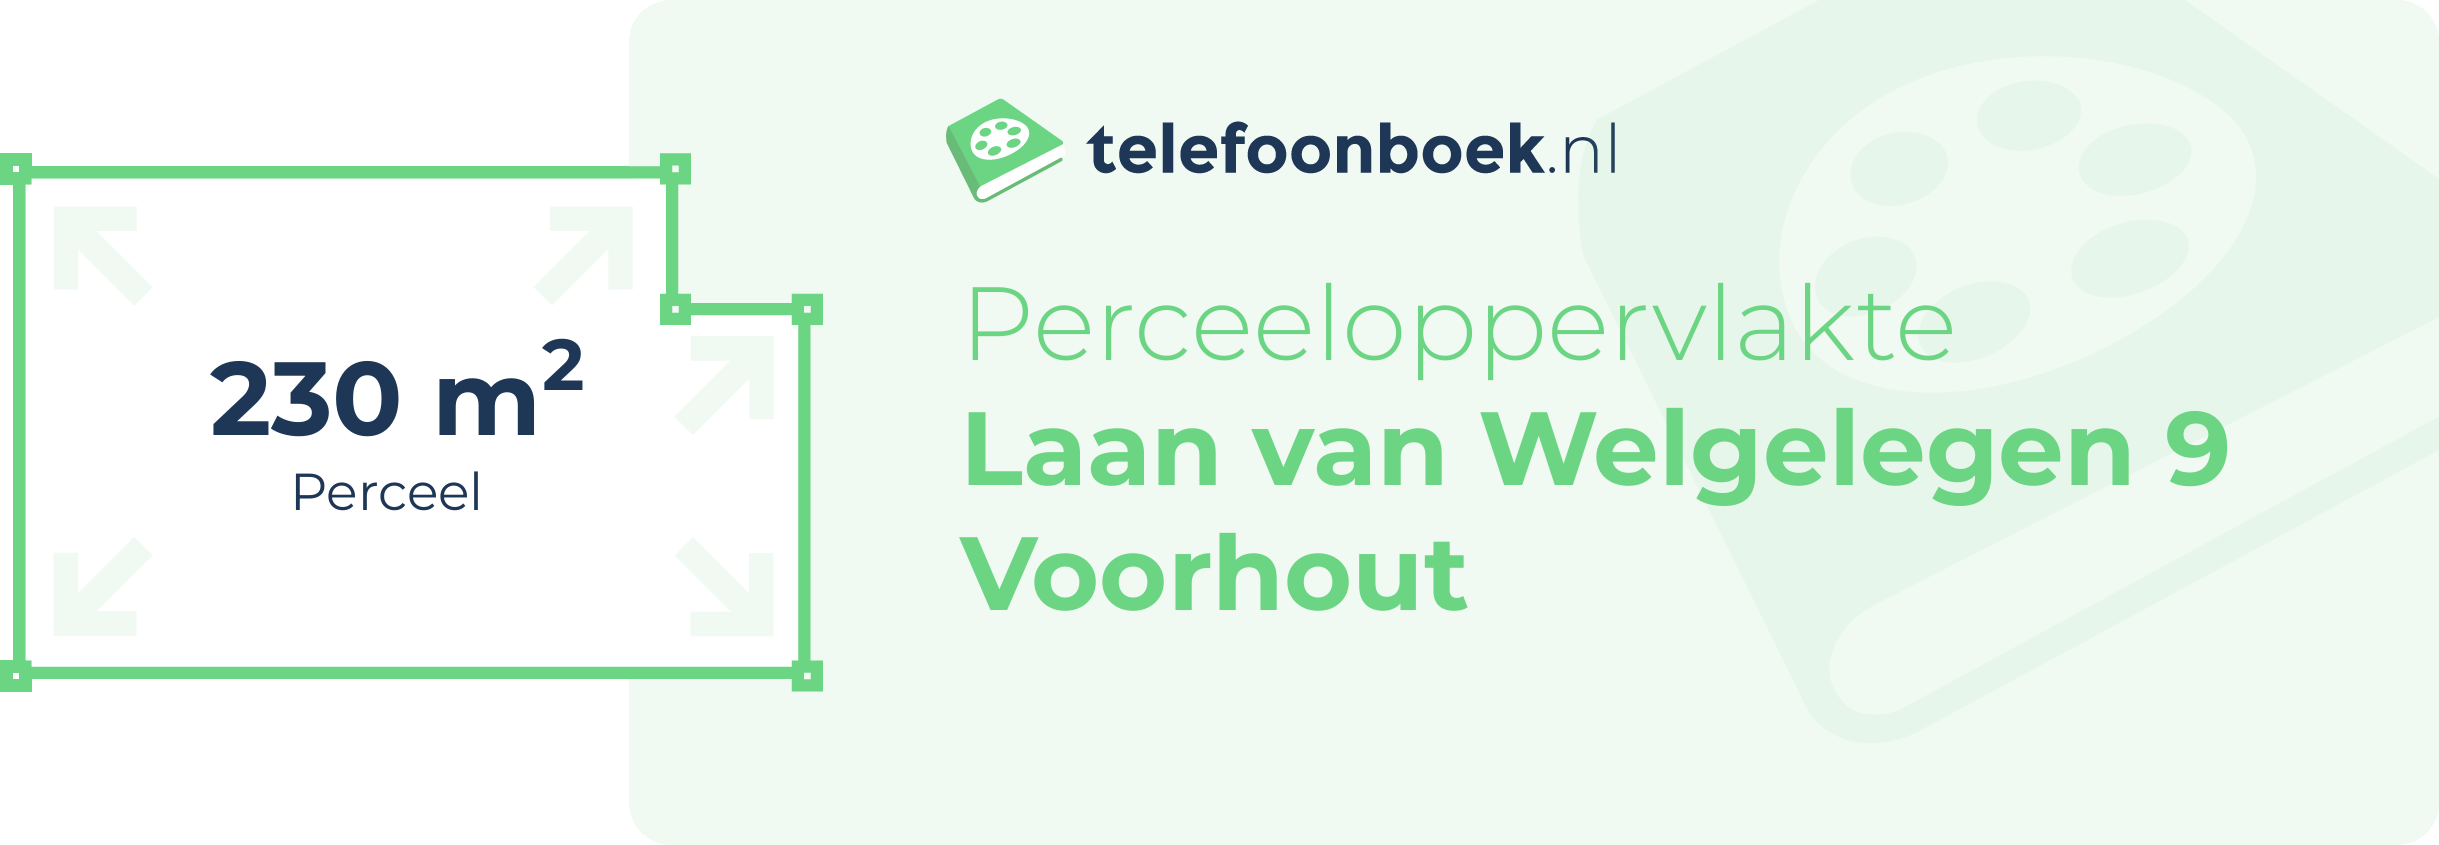 Perceeloppervlakte Laan Van Welgelegen 9 Voorhout